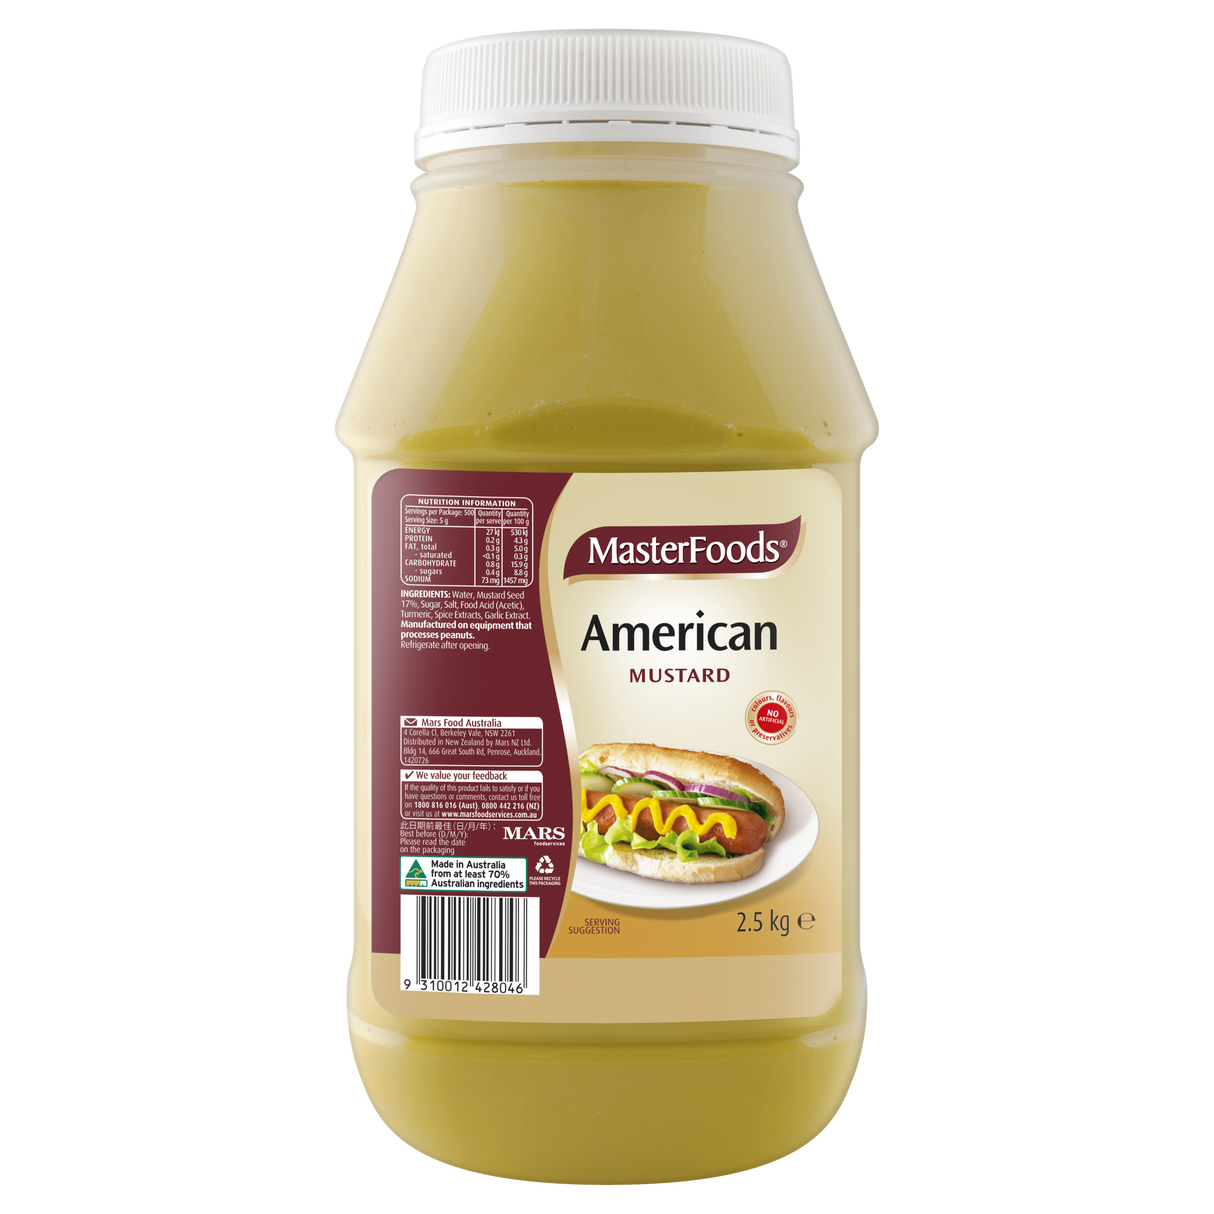 MasterFoods American Mustard 2.5kg